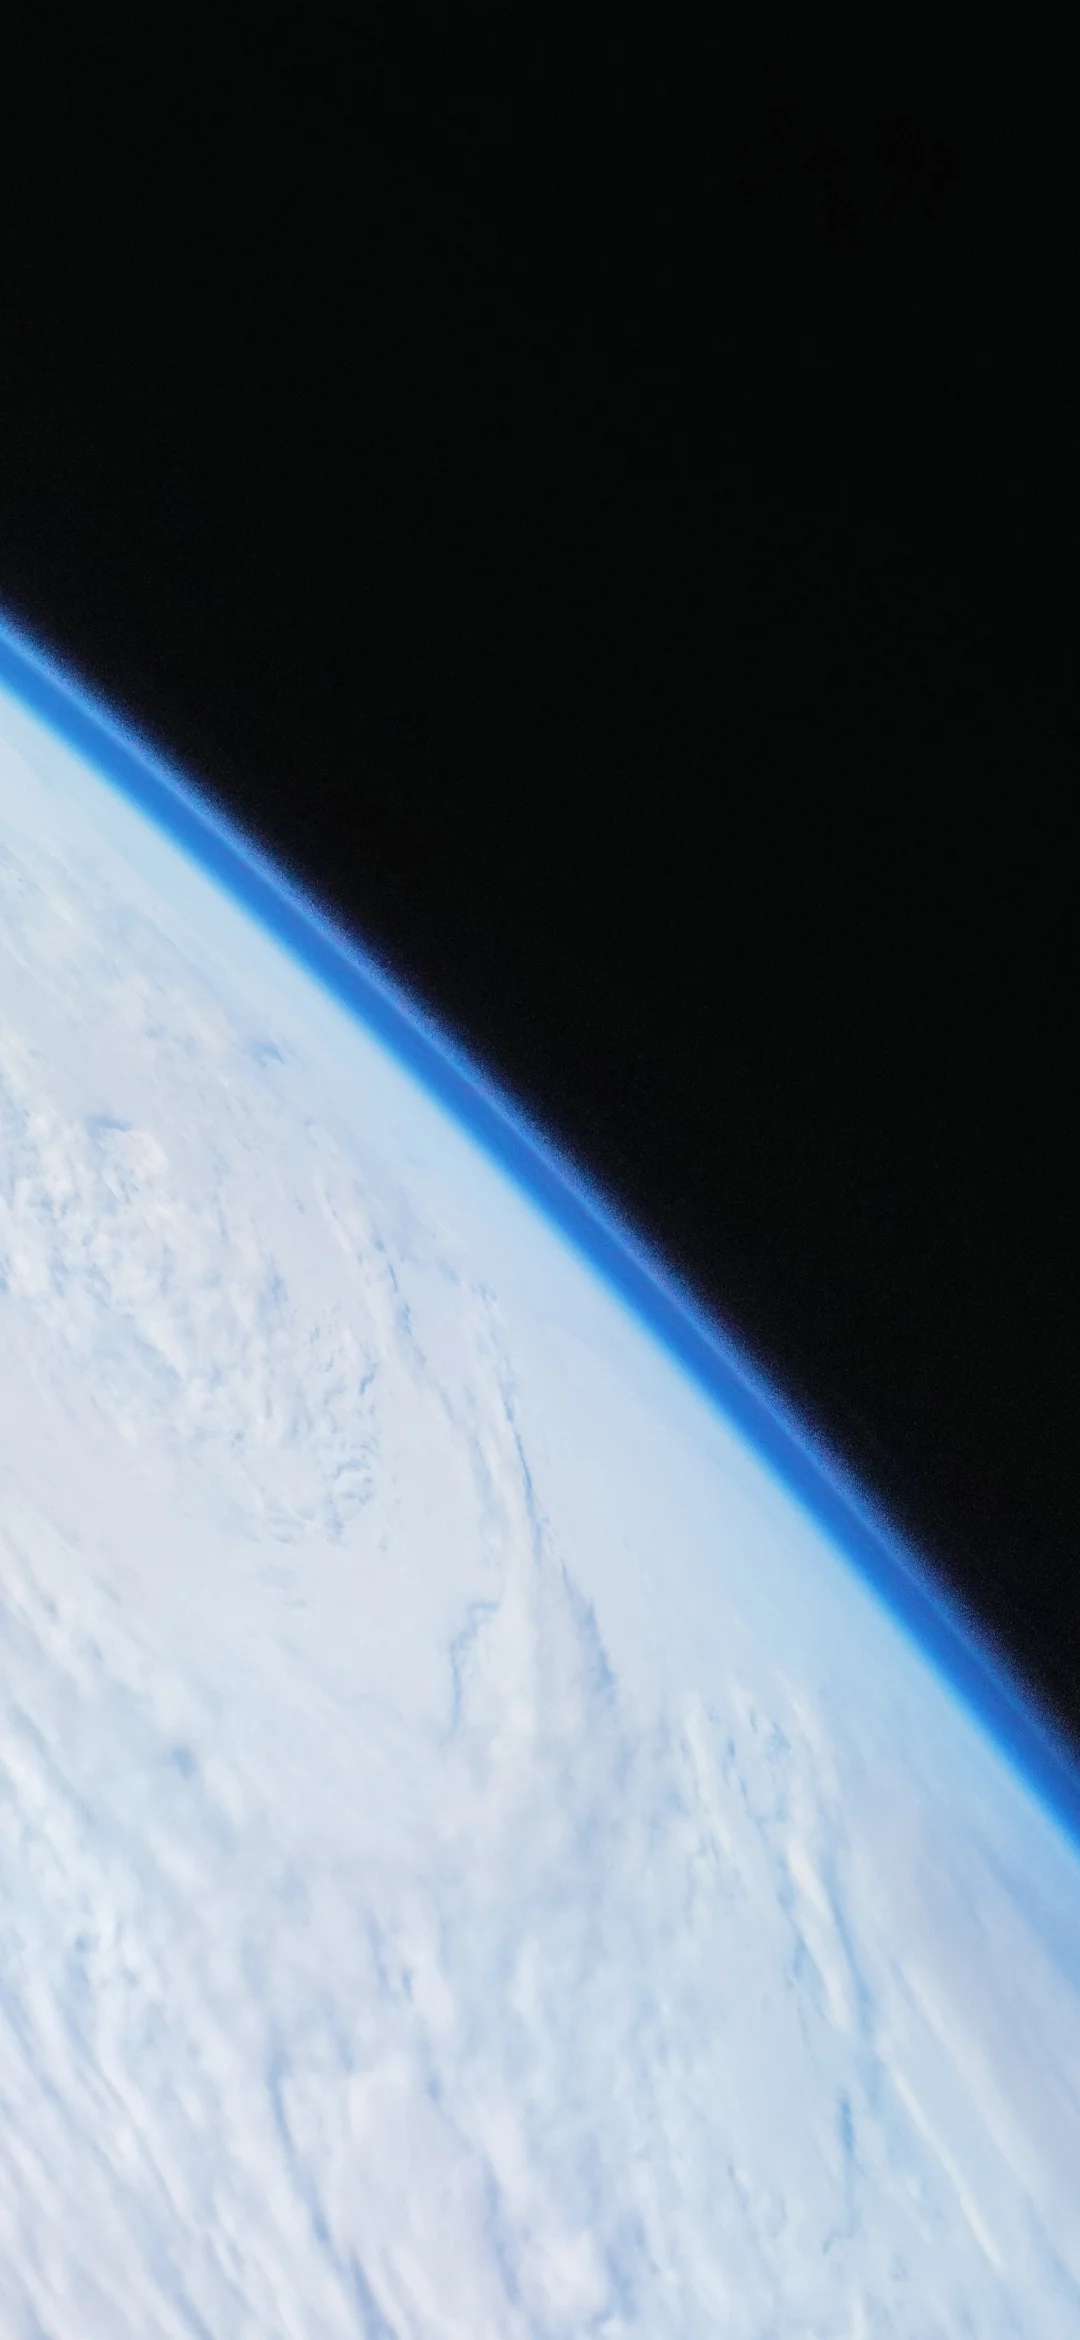 9 великолепных снимков Земли, сделанных на камеру Xiaomi Mi 10 Pro - фото 2